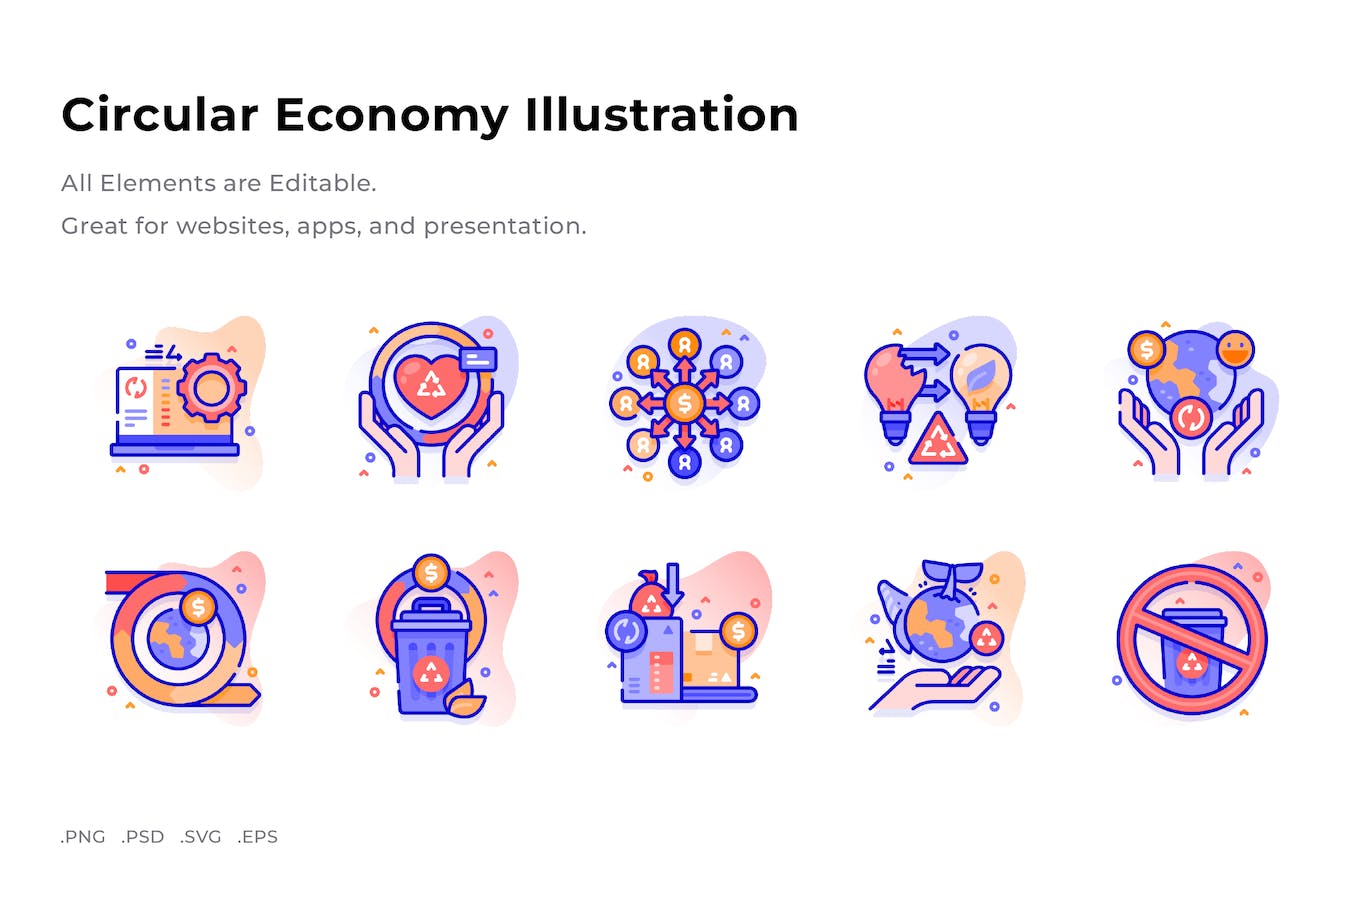 循环经济插画彩色图标素材 (PNG,PSD,SVG)